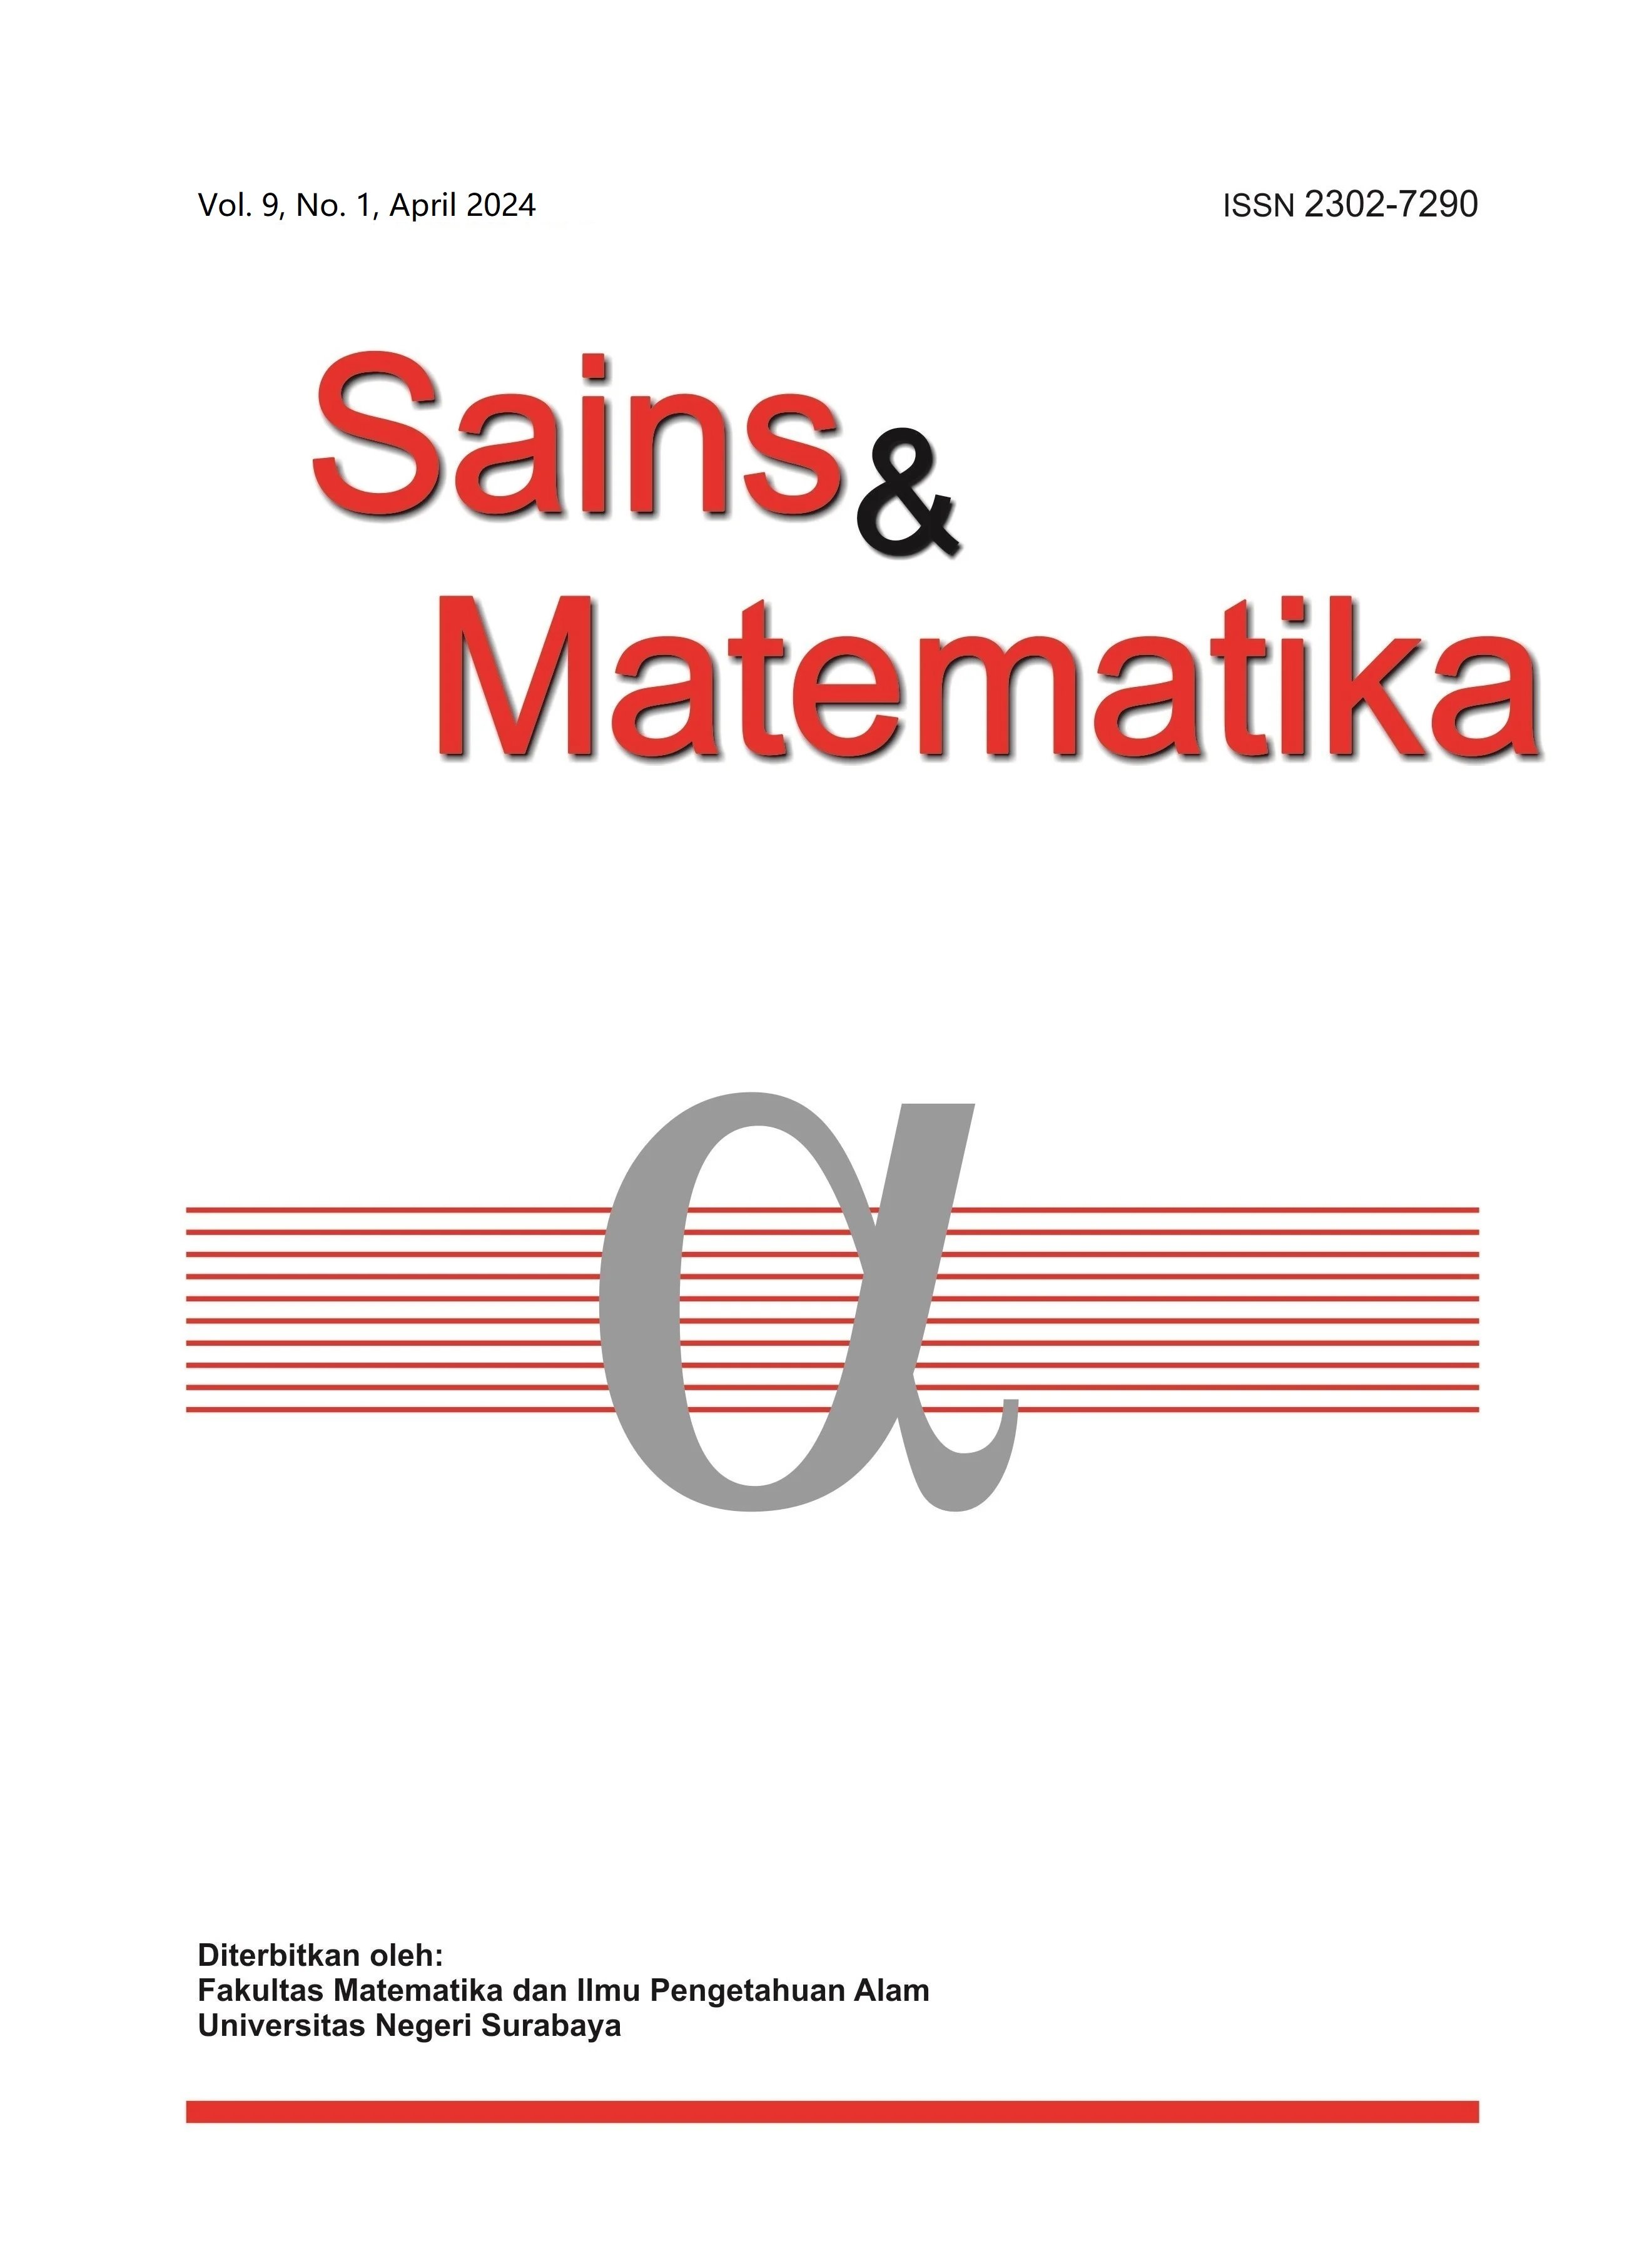 					View Vol. 9 No. 1 (2024): April, Sains & Matematika
				